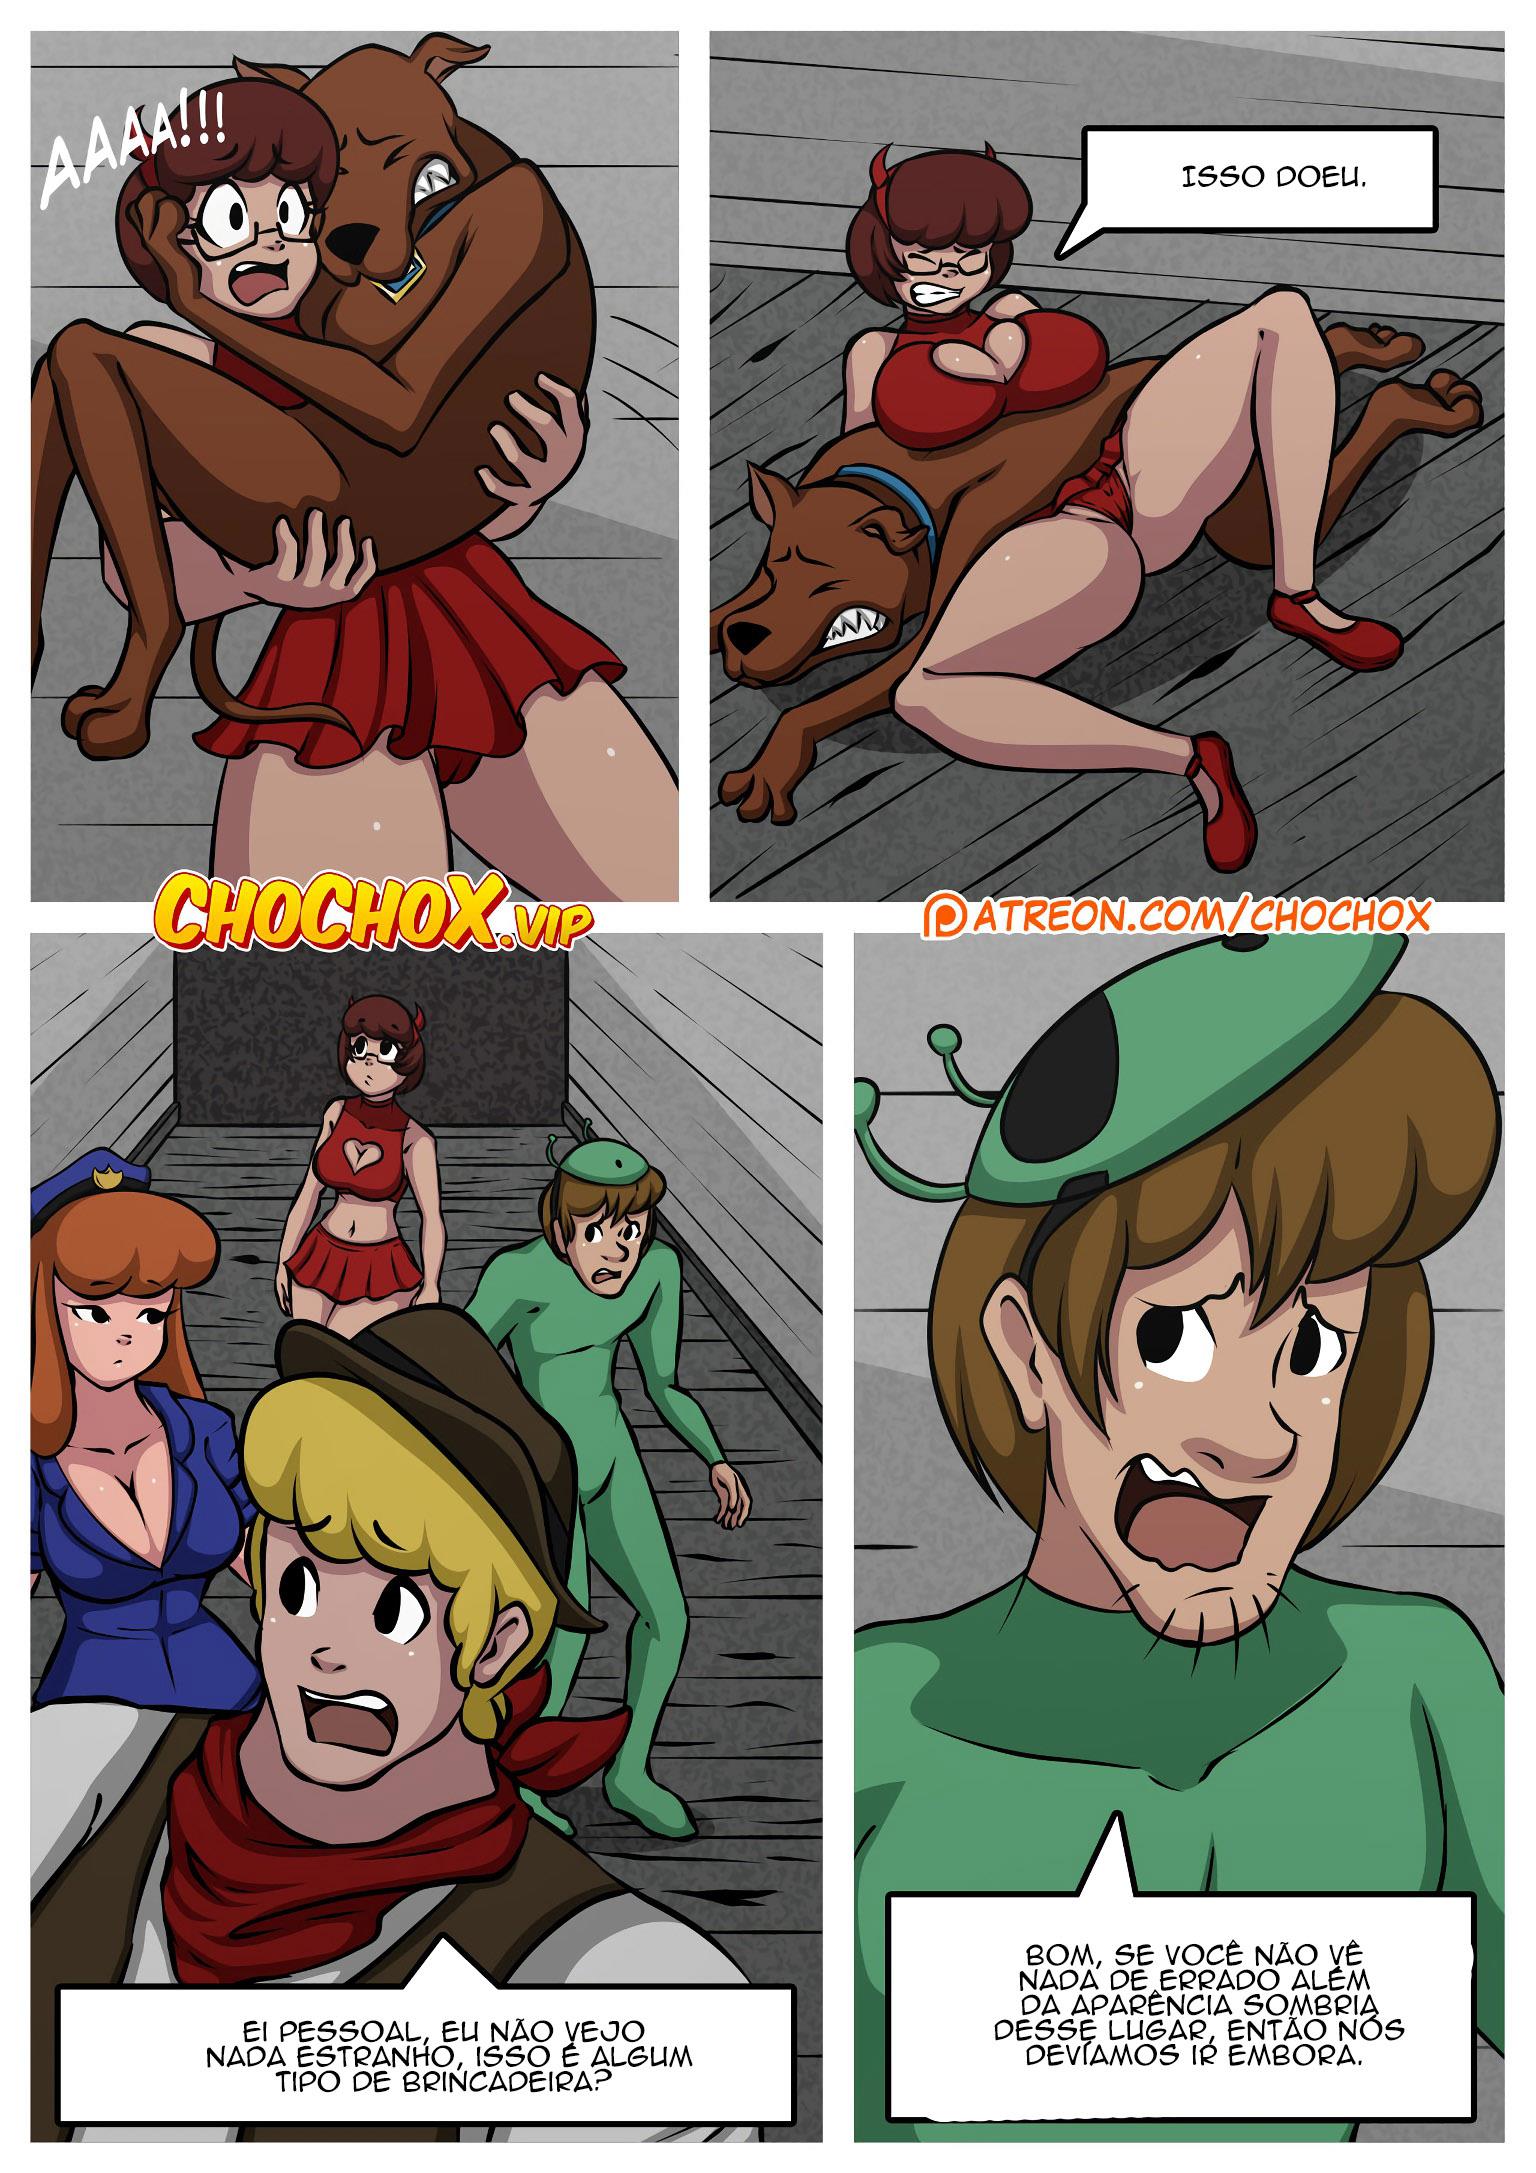 O Halloween de sacanagem de Scooby Doo